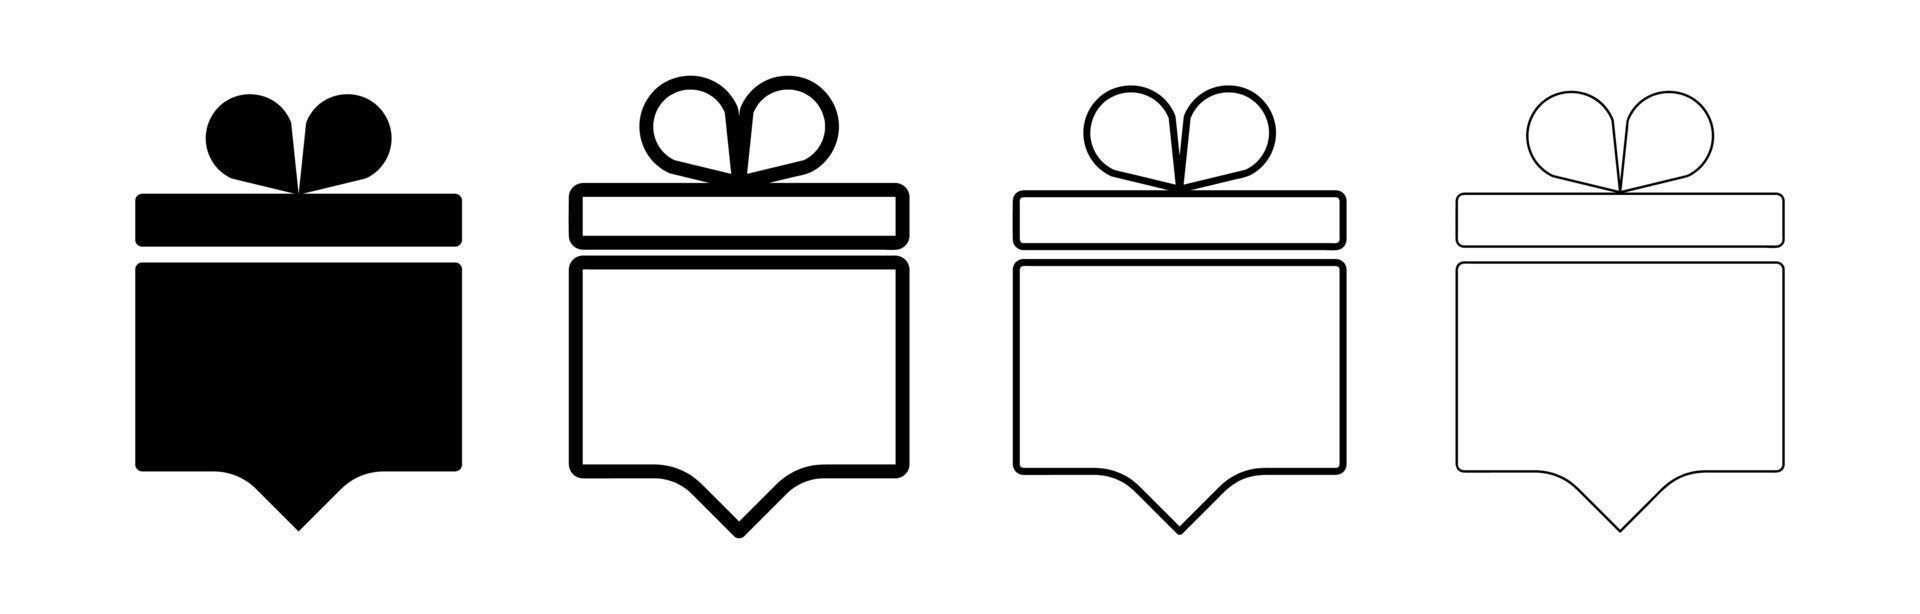 icono de papel de regalo cuadrado con espacio para el habla. caja con tapa. ubicación de papel de regalo. conjuntos similares de varios botones de voz. dibujo editable. vector sobre un fondo blanco.